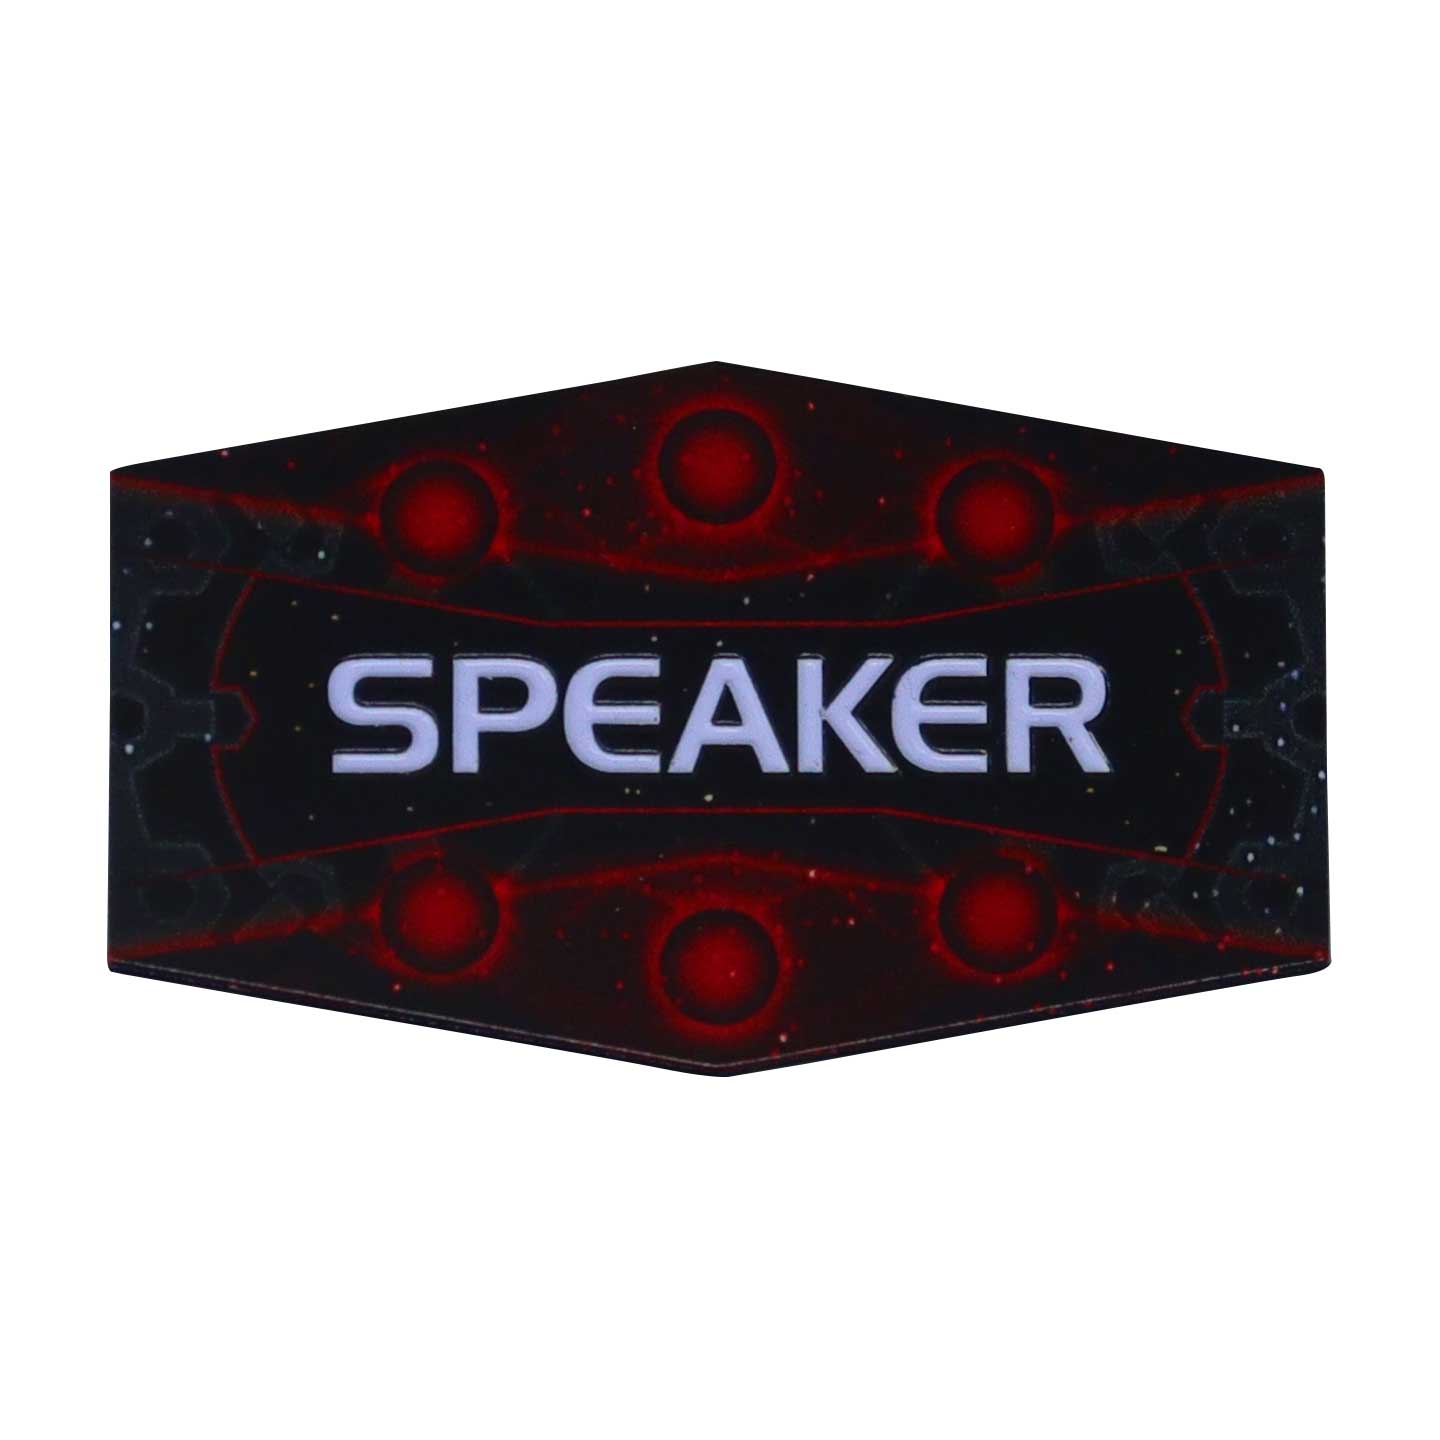 Twilight Imperium Speaker Pin Badge